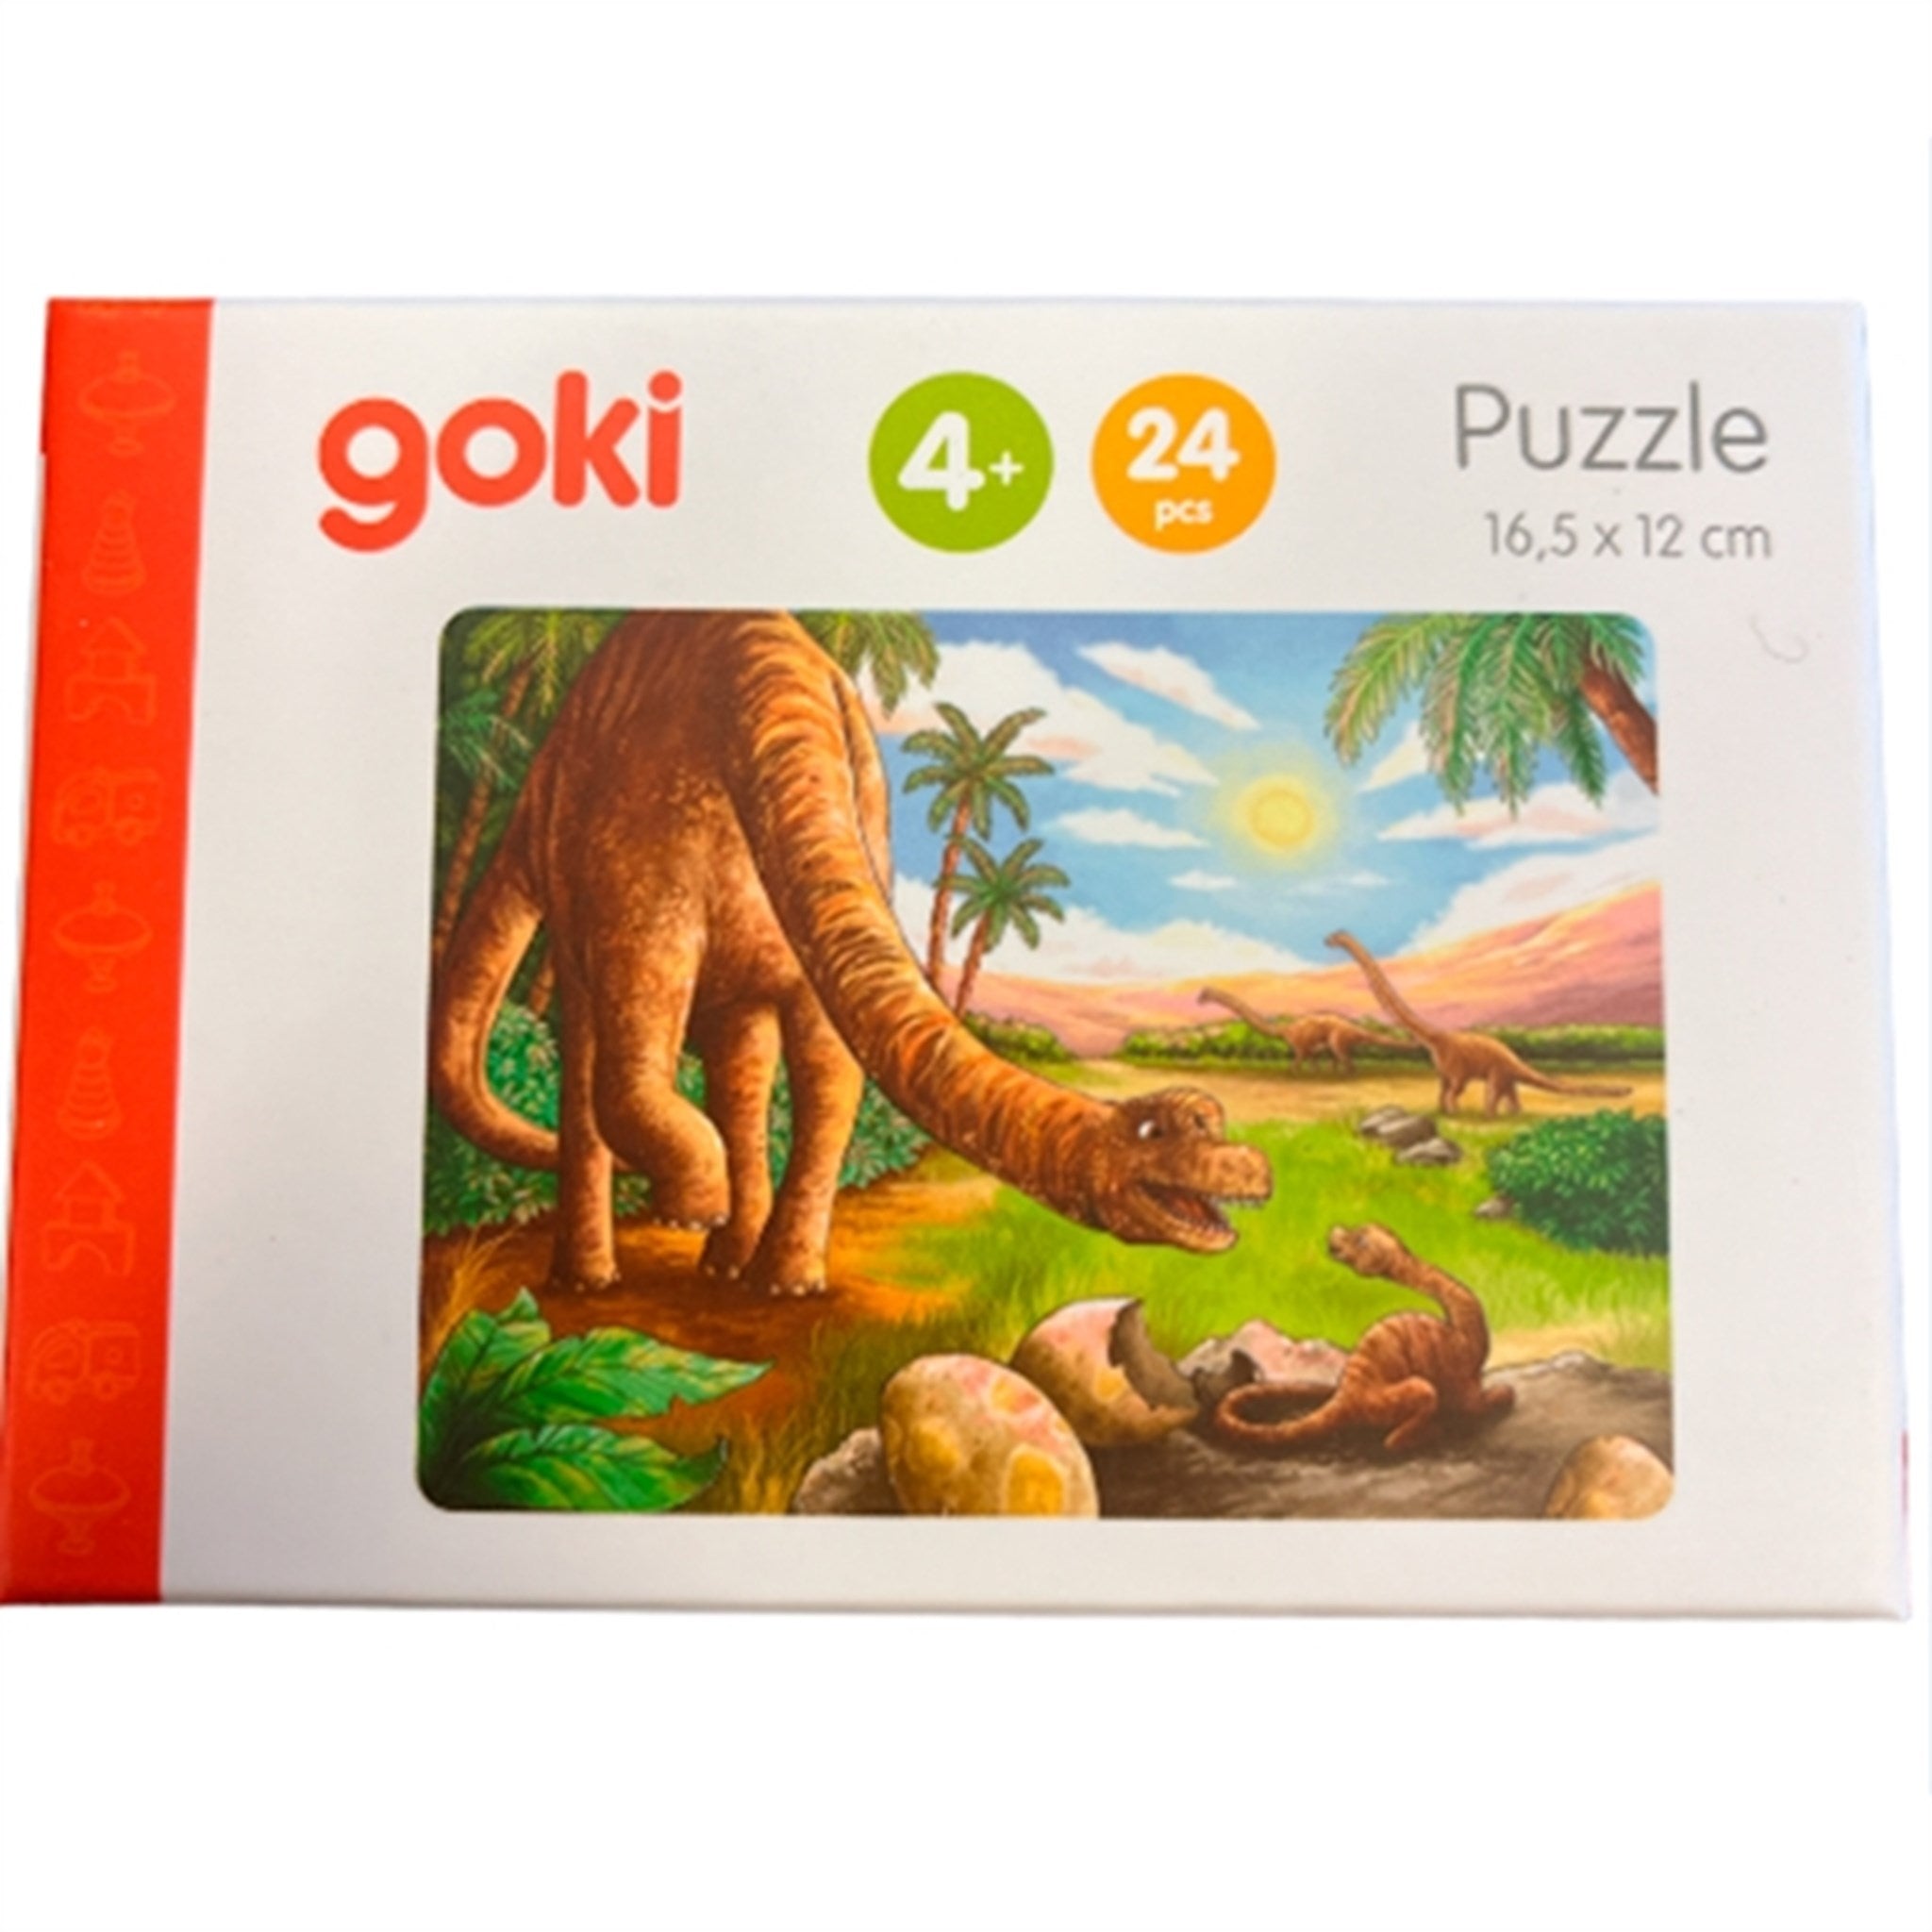 Goki Puzzle Mini - Dinosaur 1